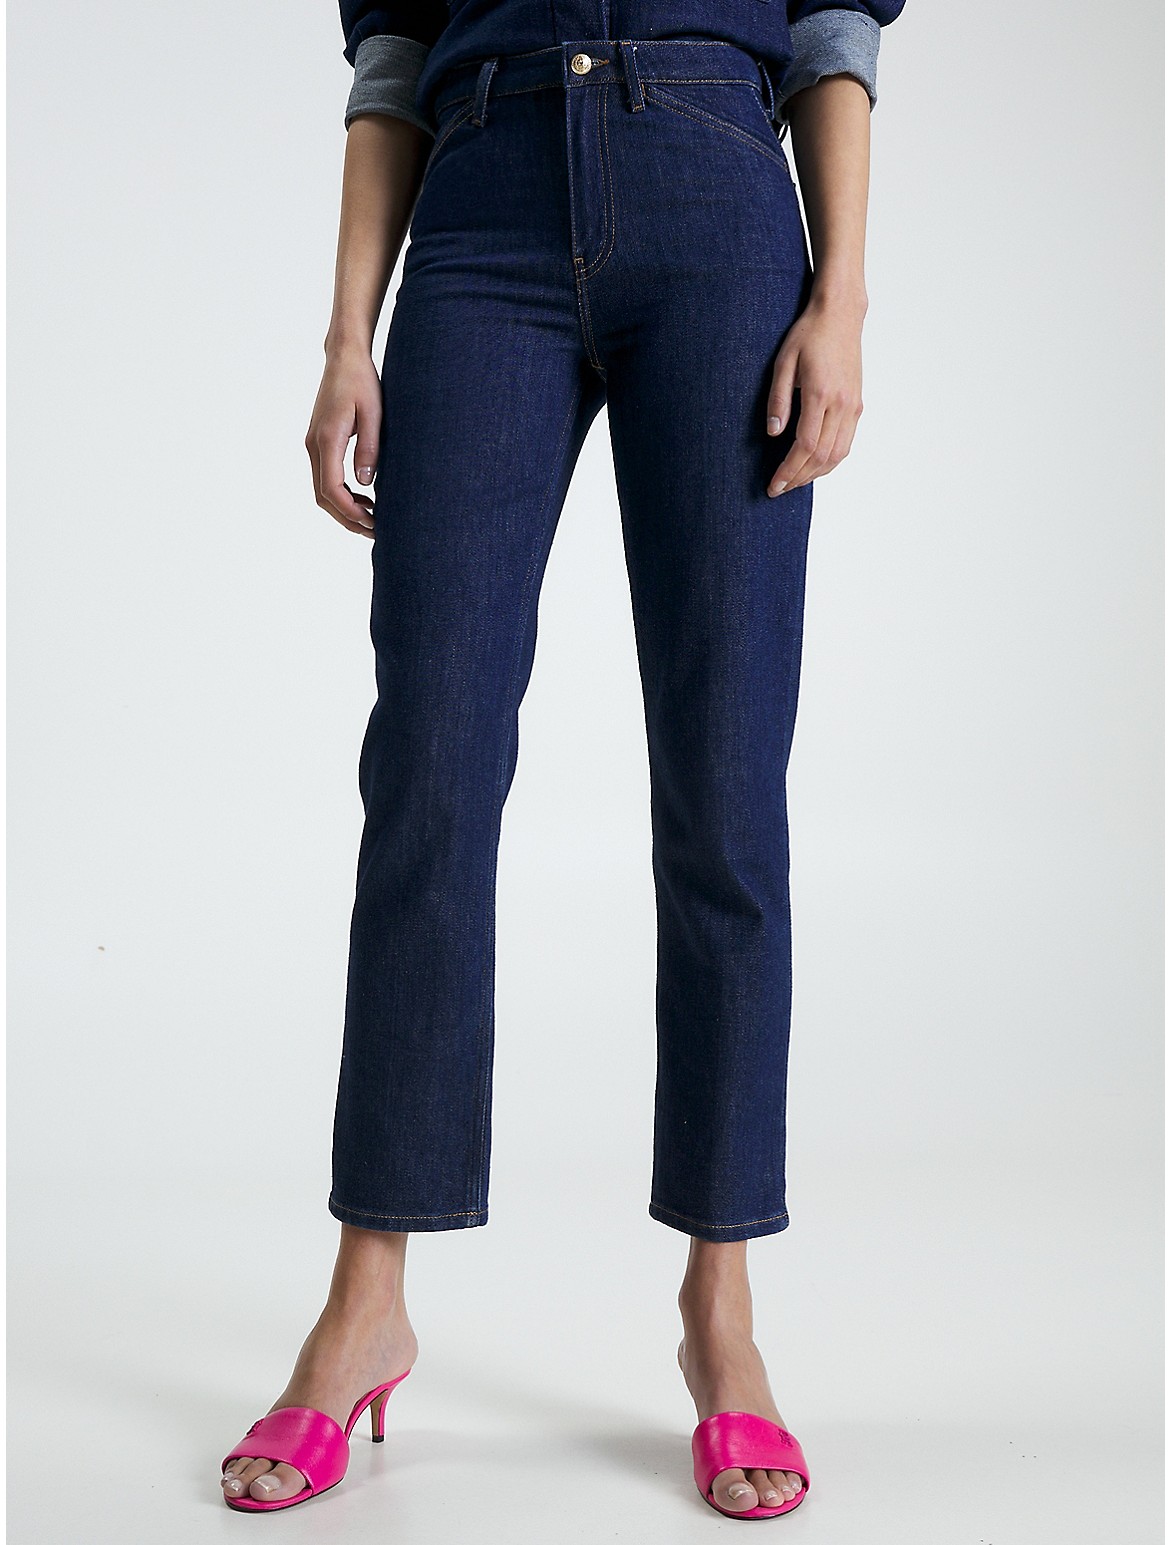 Tommy Hilfiger Women's High-Waist Straight Fit Jean - Blue - 31W x 32L